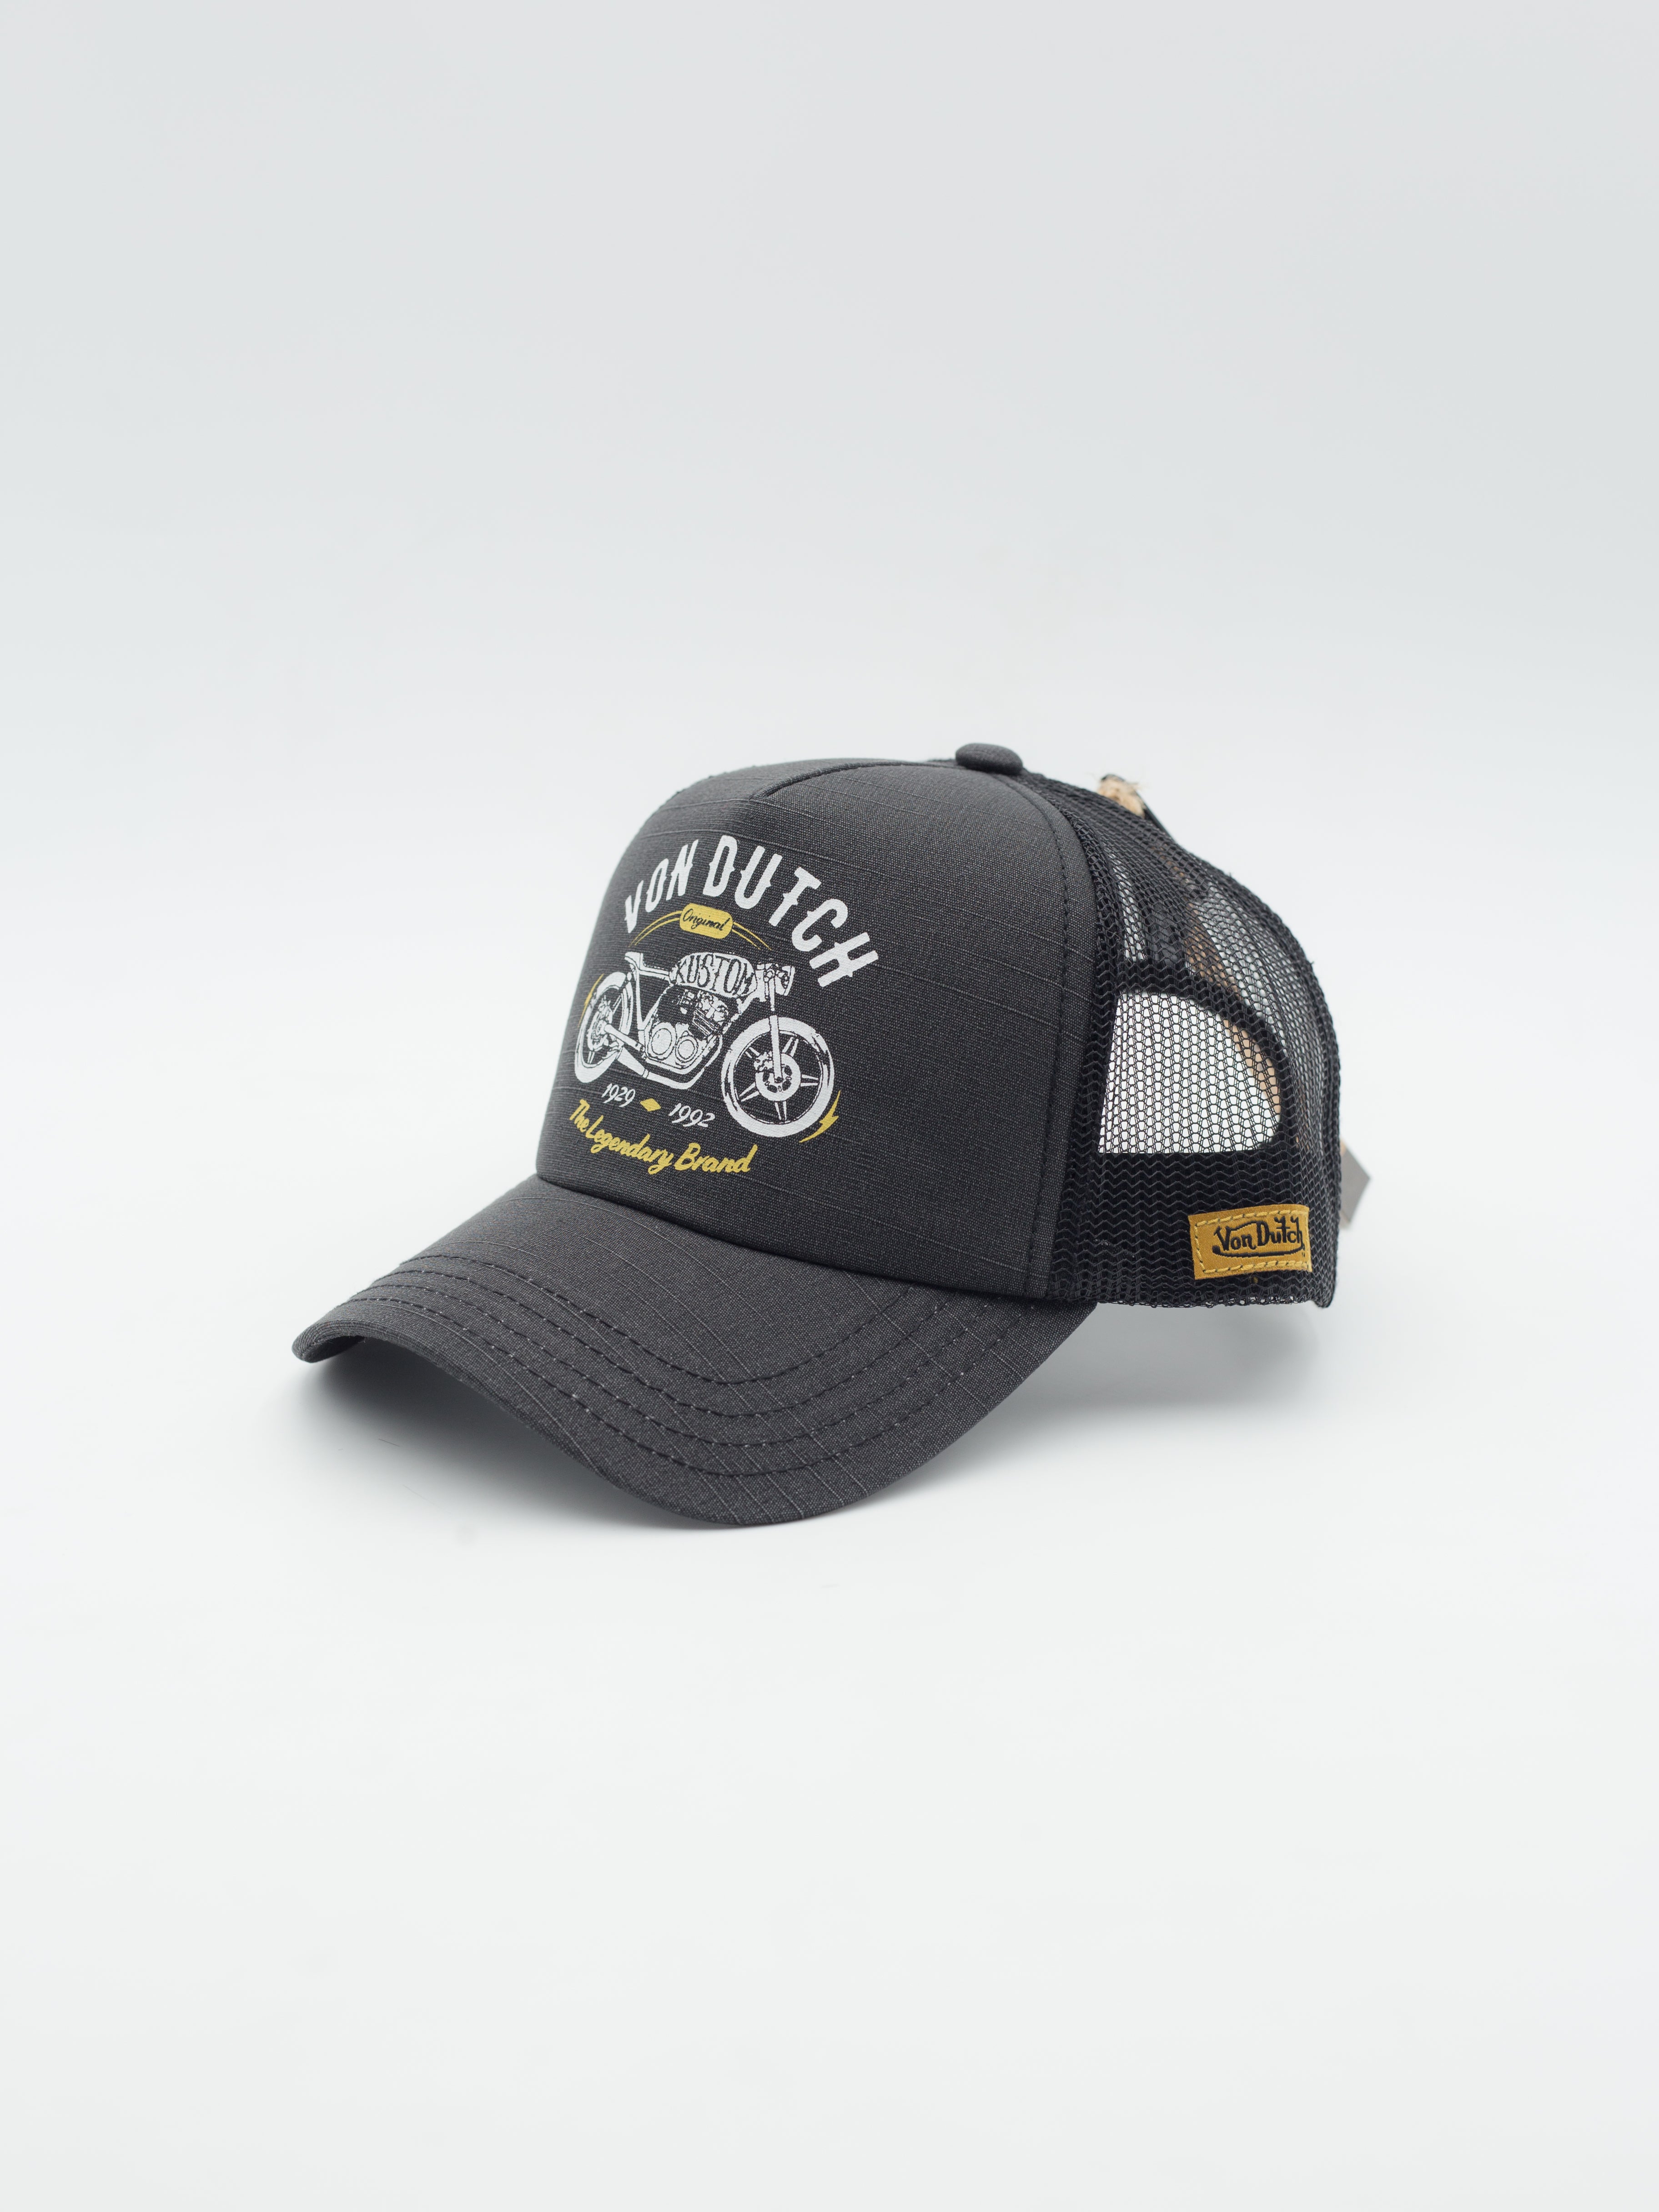 Crew9 Trucker Hat